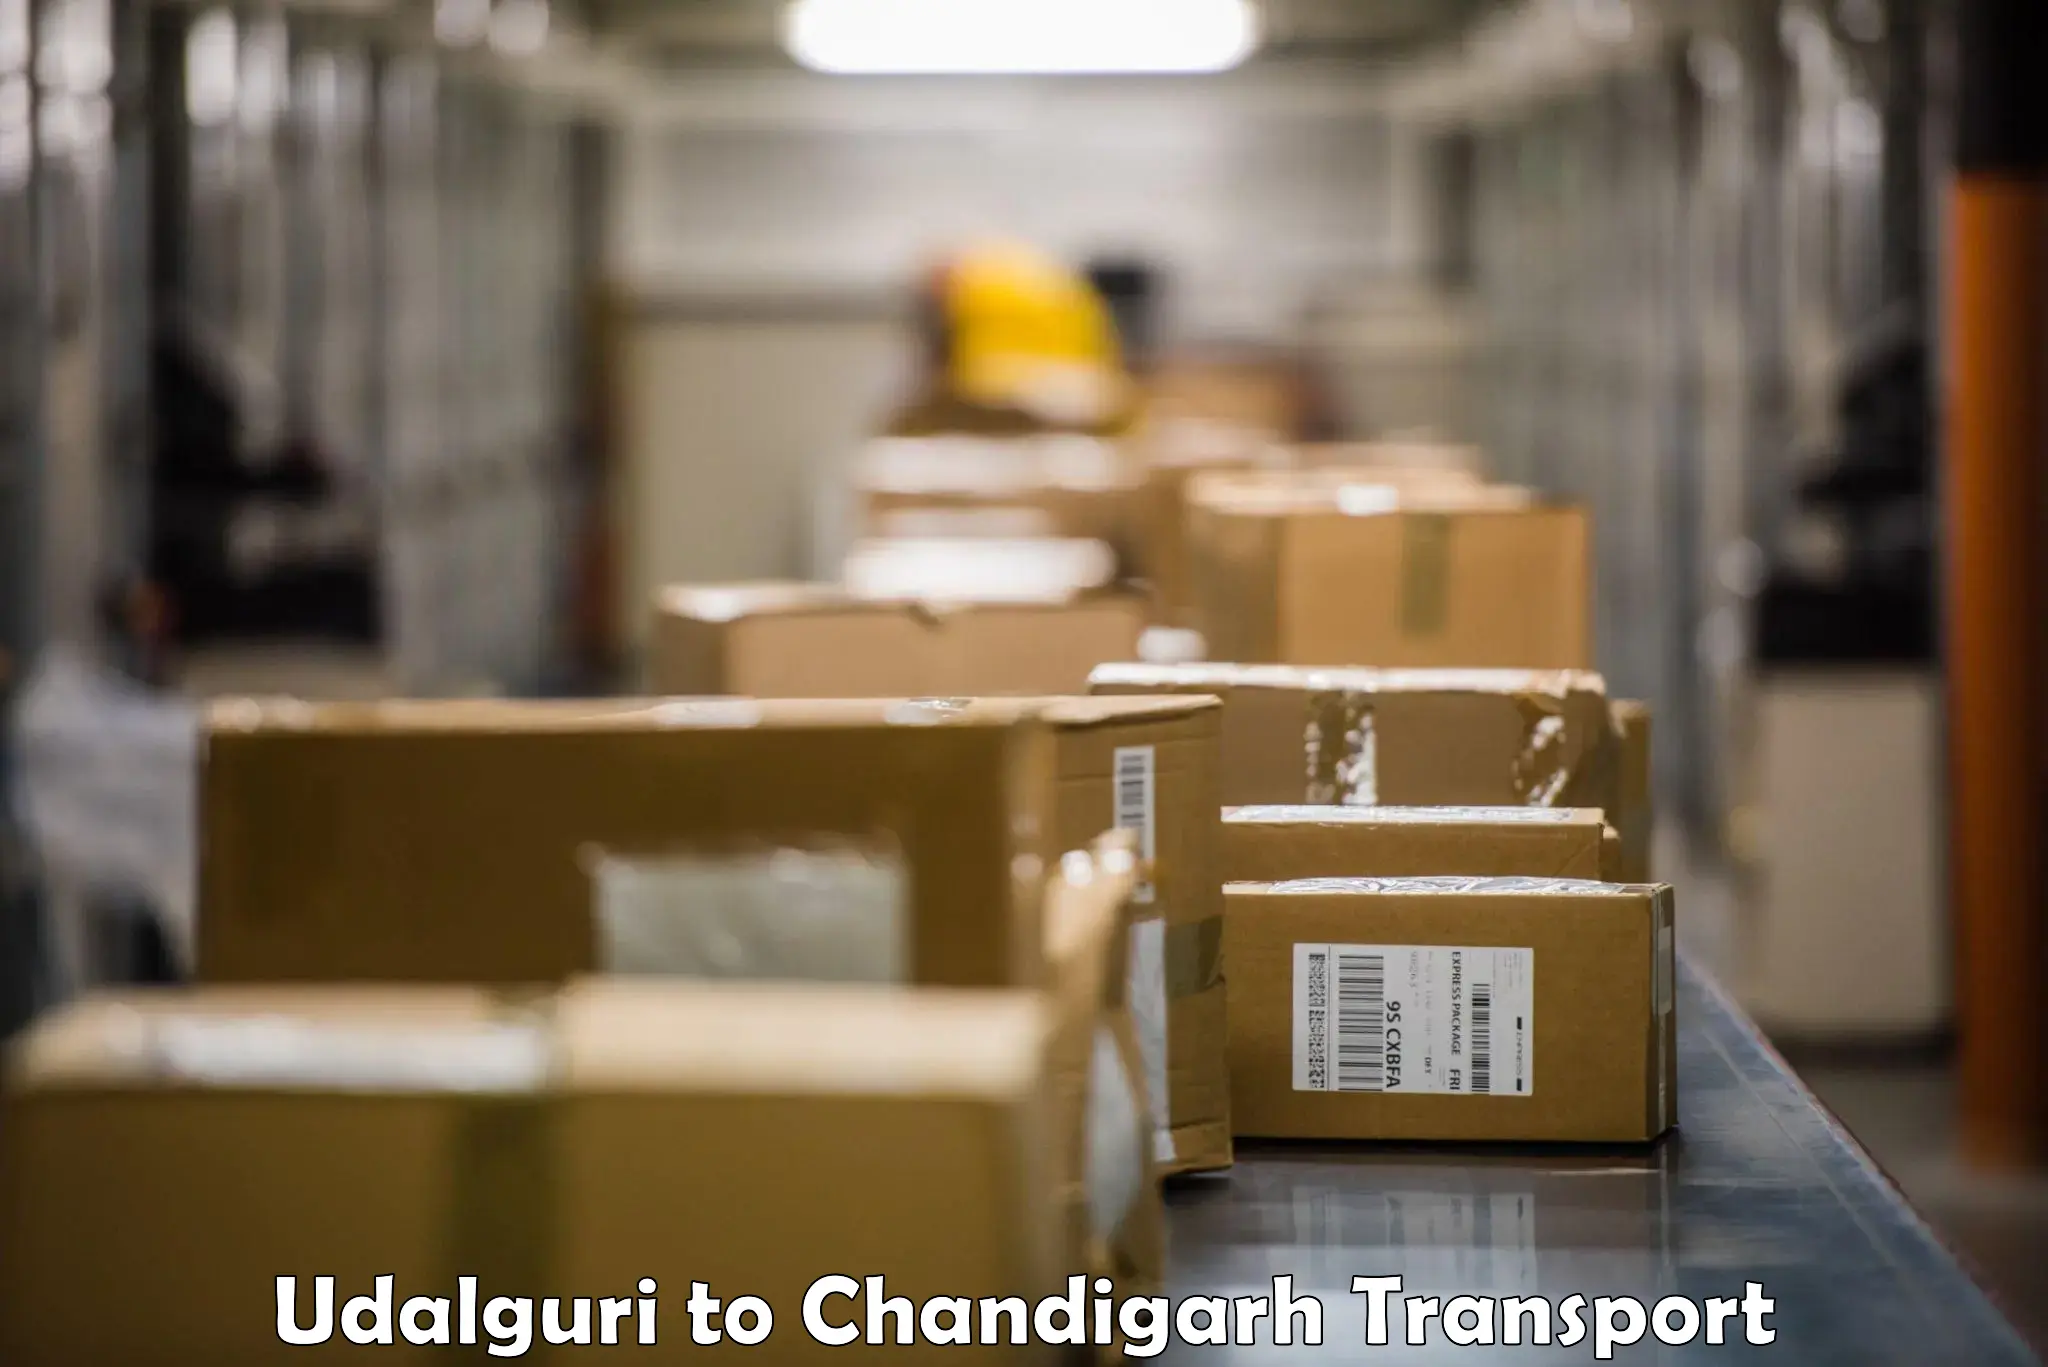 Bike transport service Udalguri to Chandigarh